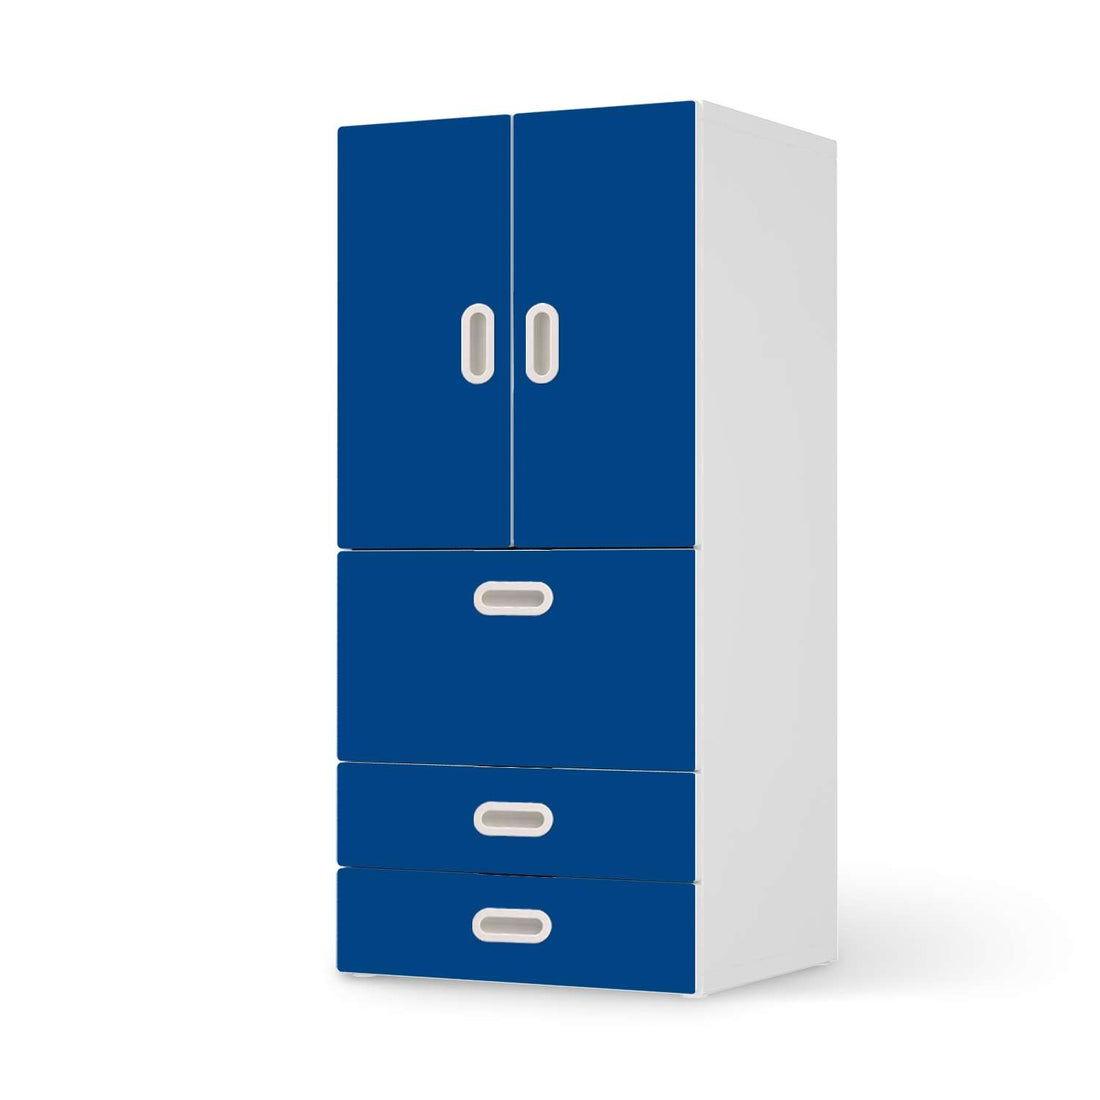 Möbelfolie Blau Dark - IKEA Stuva / Fritids kombiniert - 3 Schubladen und 2 kleine Türen  - weiss